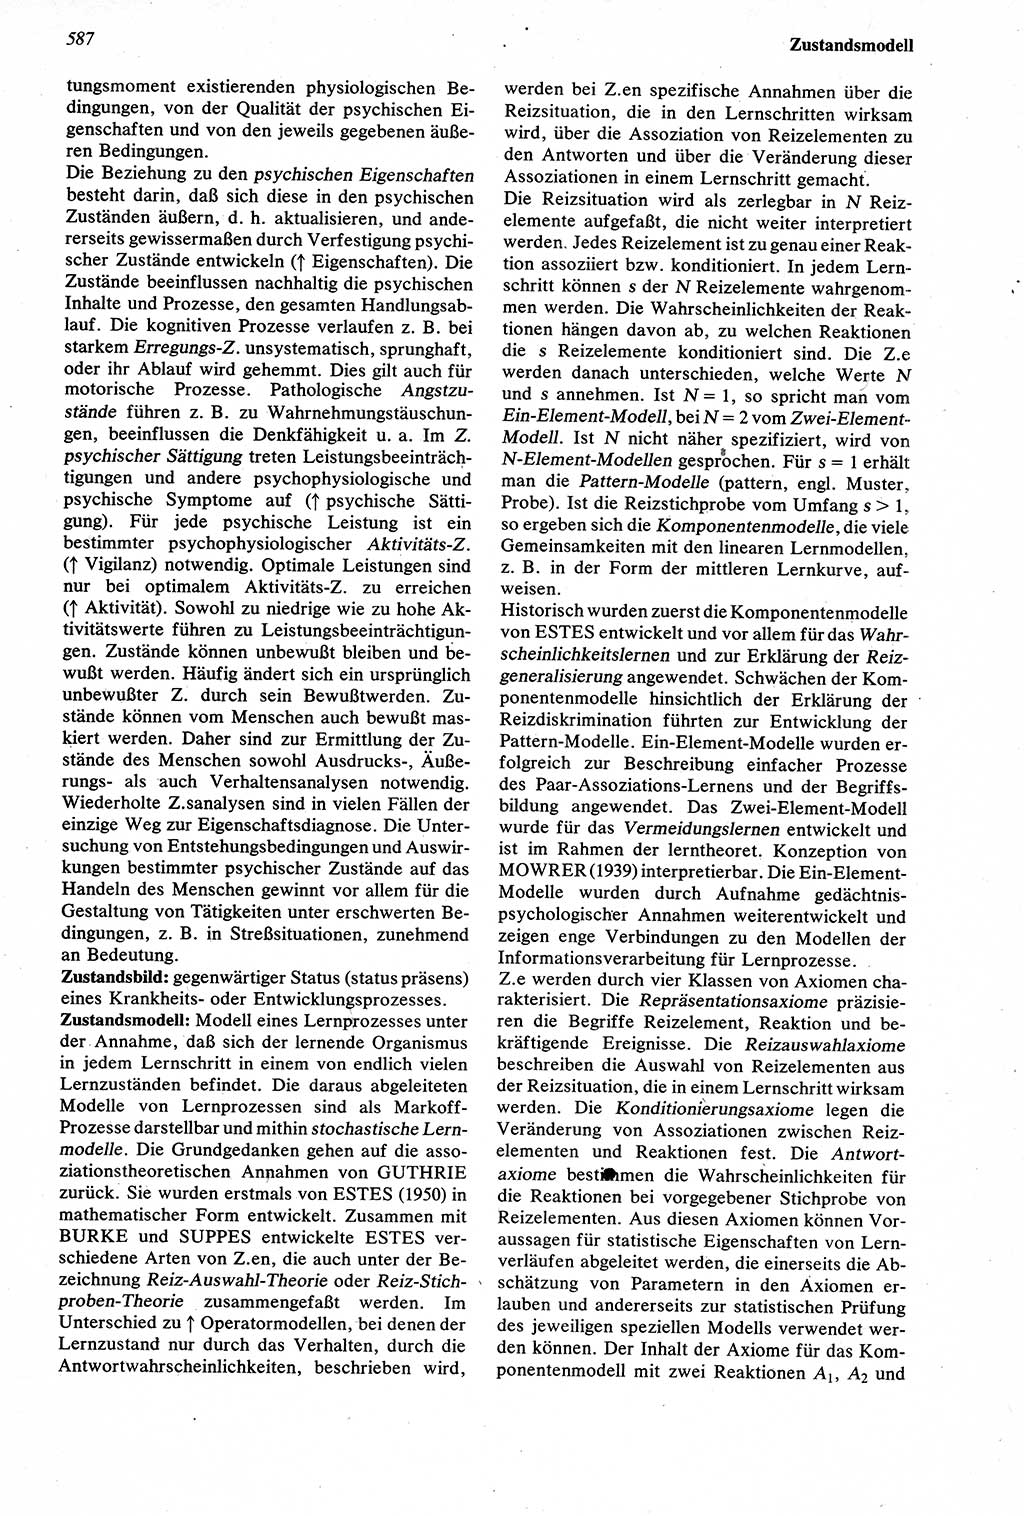 Wörterbuch der Psychologie [Deutsche Demokratische Republik (DDR)] 1976, Seite 587 (Wb. Psych. DDR 1976, S. 587)